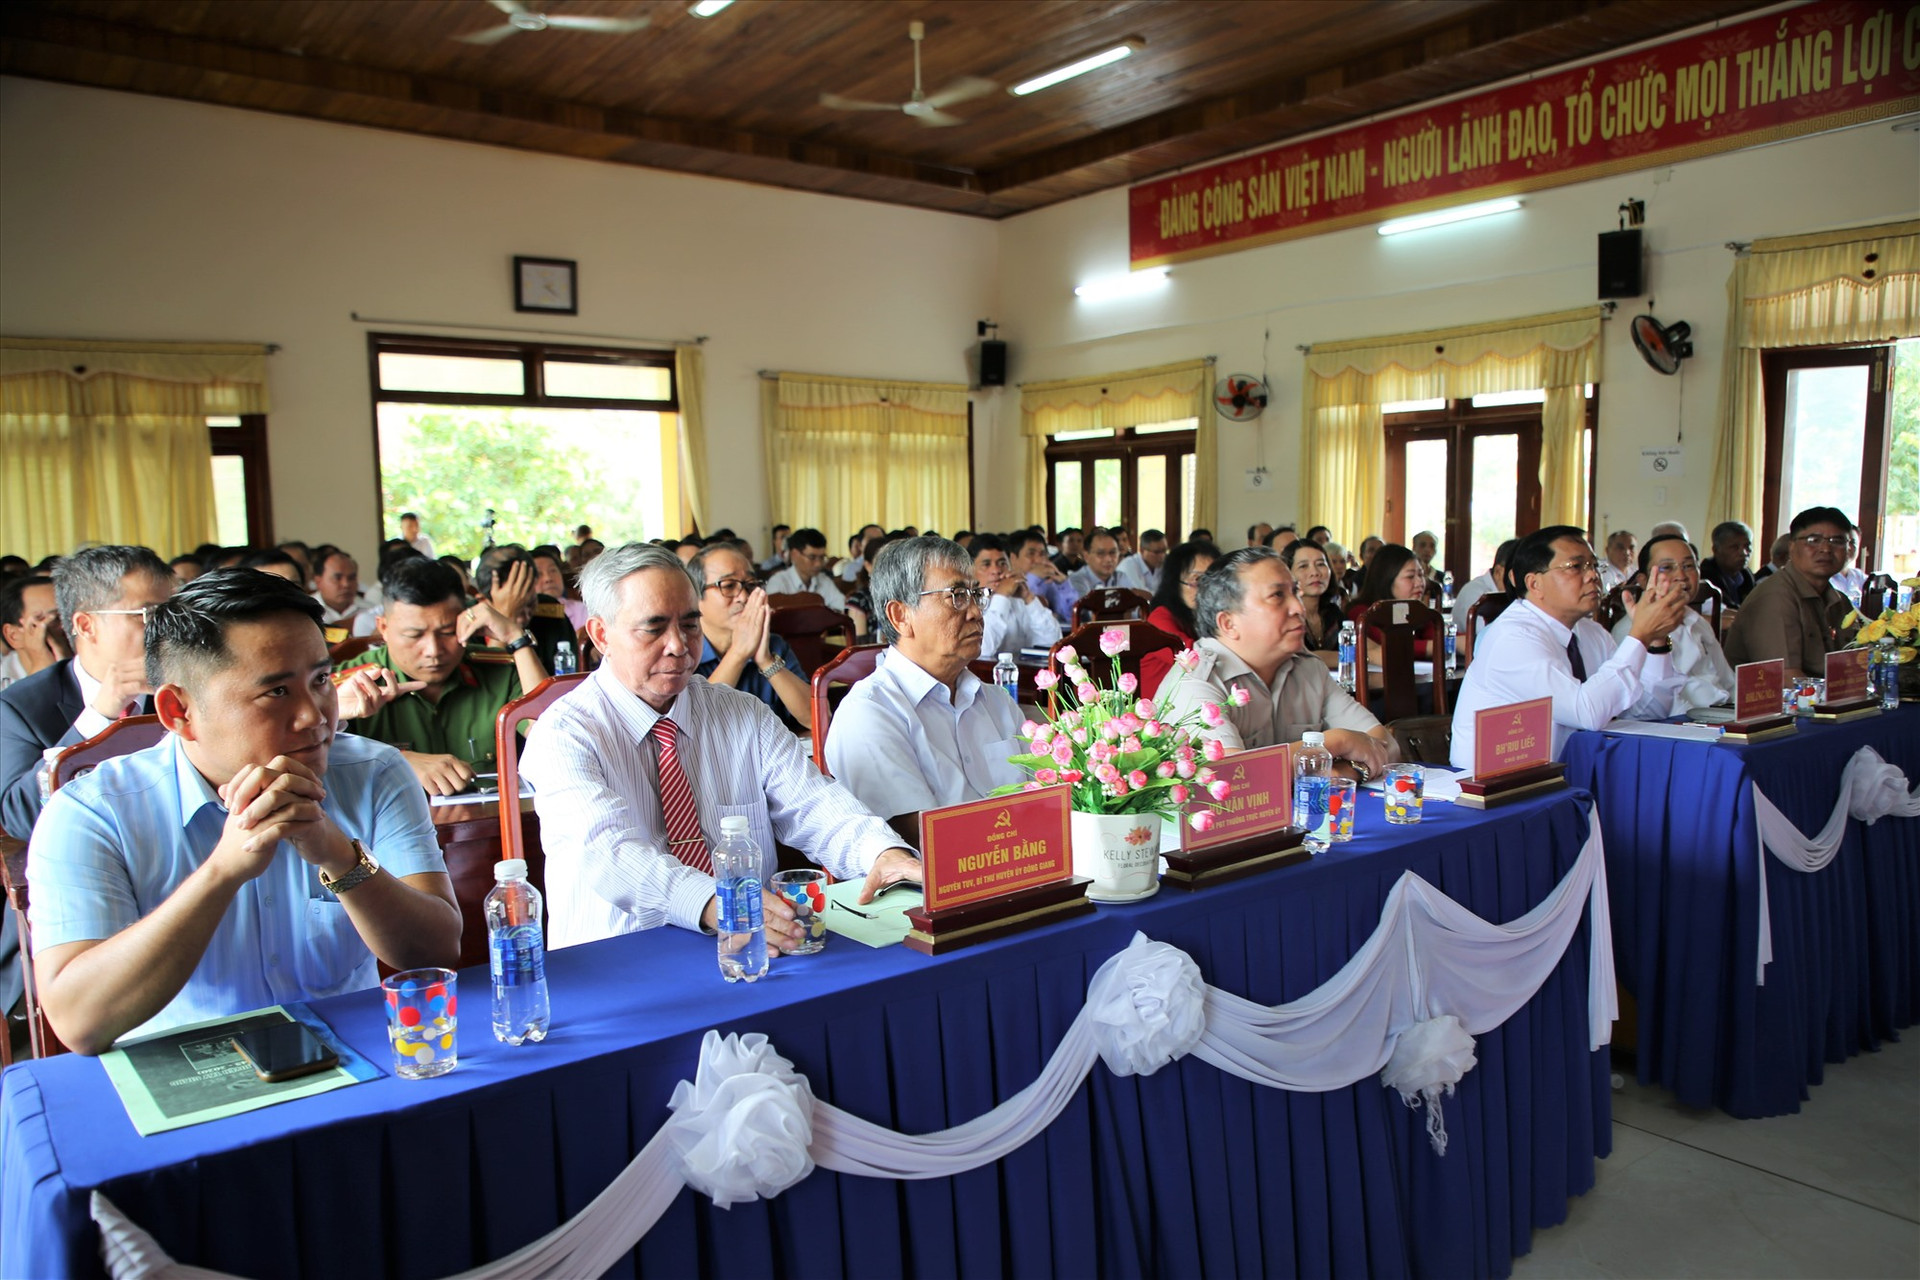 Đại diện lãnh đạo huyện Tây Giang qua các thời kỳ tham dự lễ công bố. Ảnh: A.N